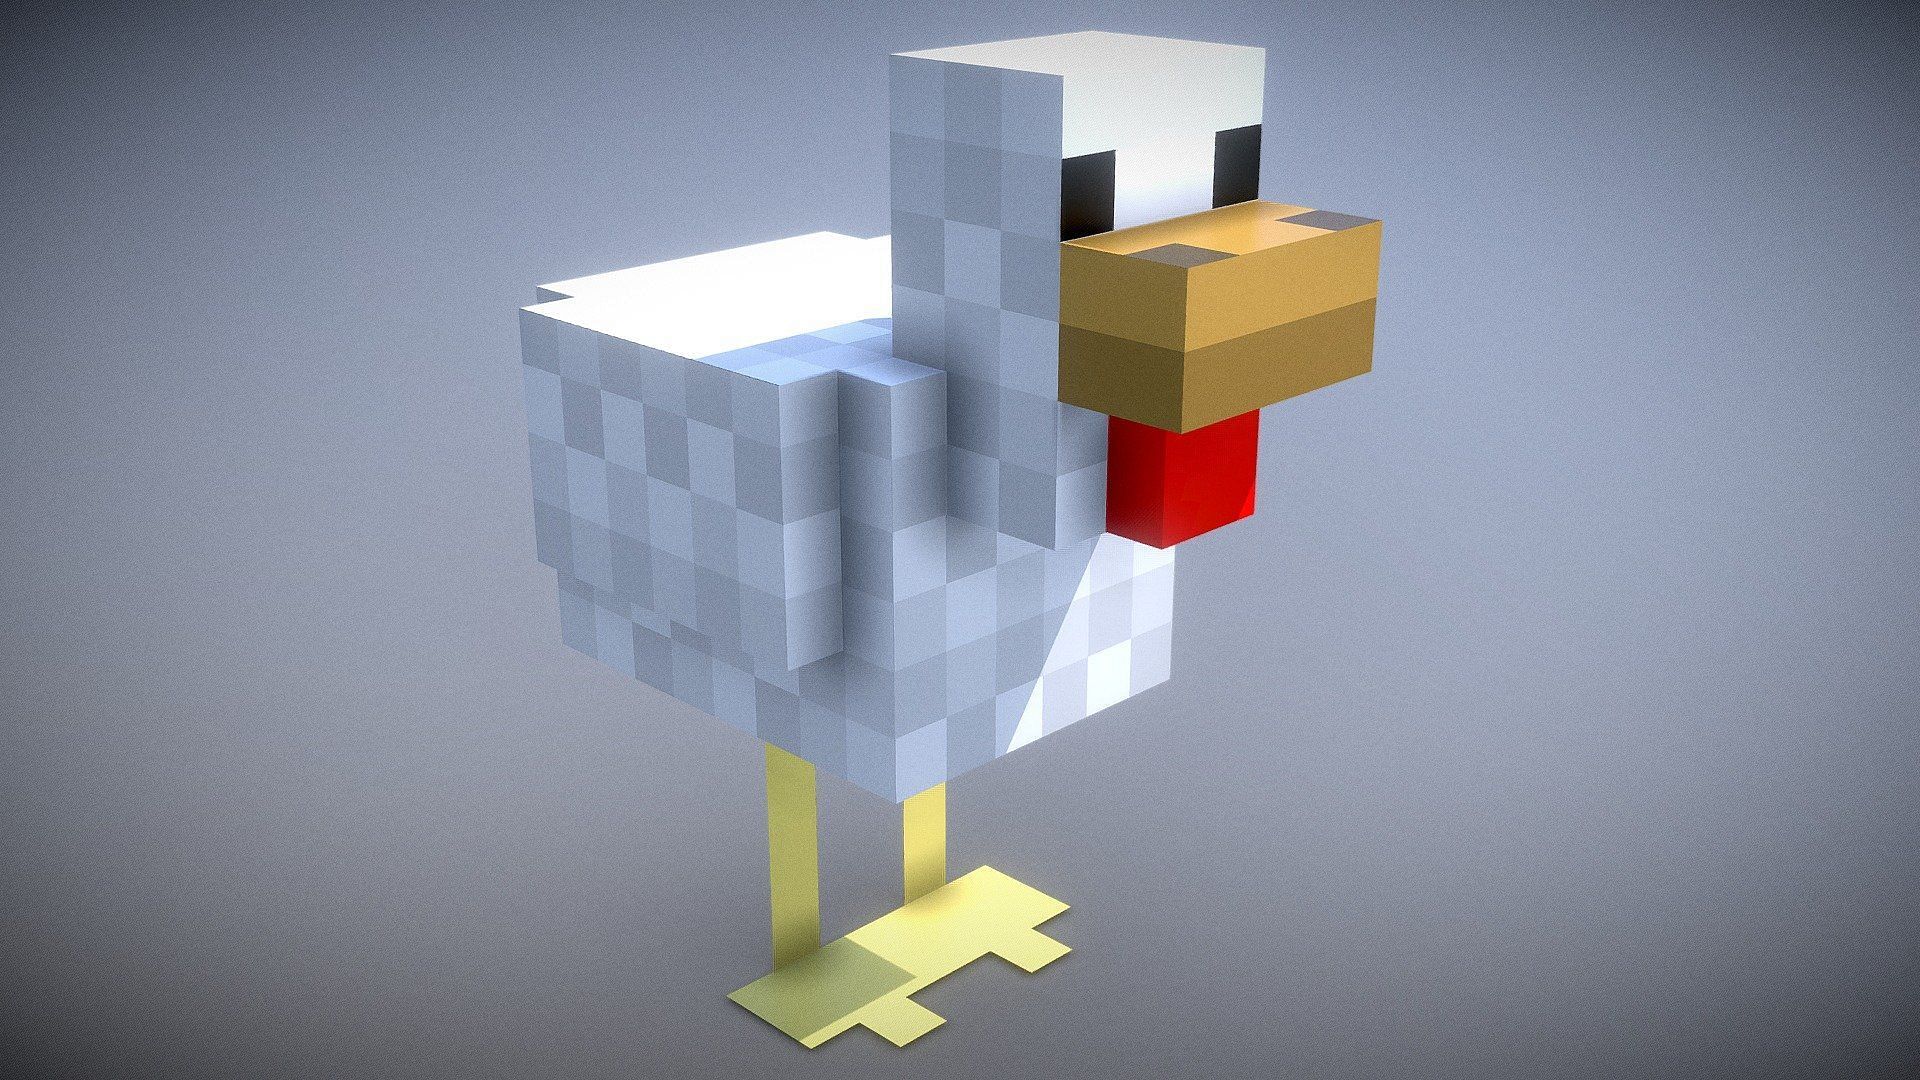 A chicken in Minecraft (Image via Sketchfab)